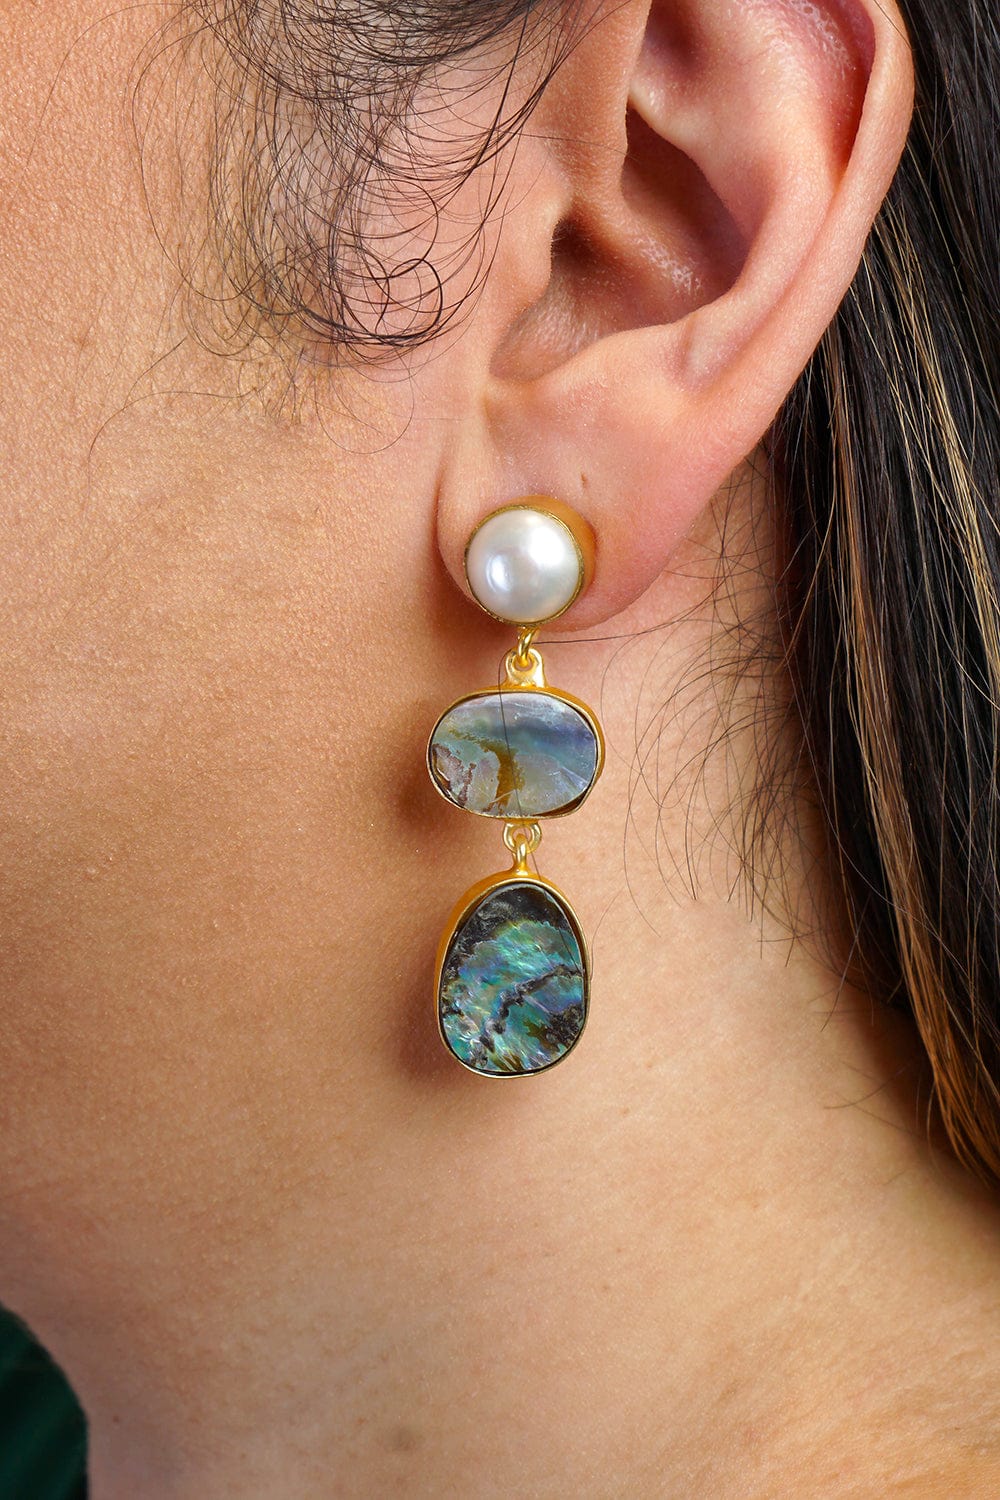 DCD EARRINGS Pearl Stud Australian Abalone Shell 3 Tier Earrings